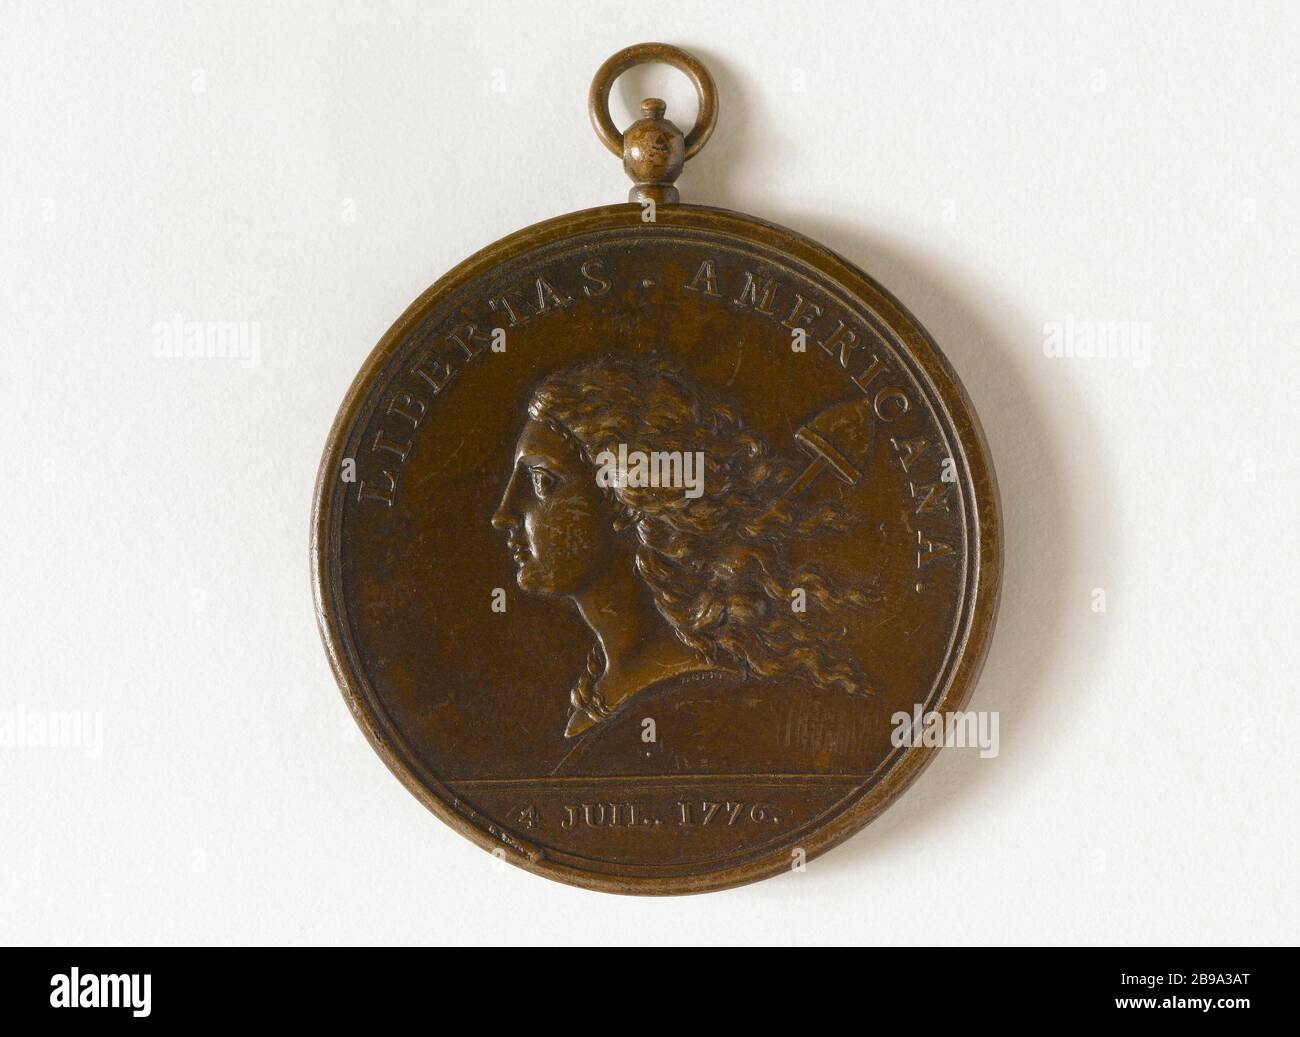 LIBERTAS AMERICANA Augustin Dupré (1748-1833). 'LIBERTAS AMERICANA'. Médaille, 1783. Paris, musée Carnavalet. Stock Photo